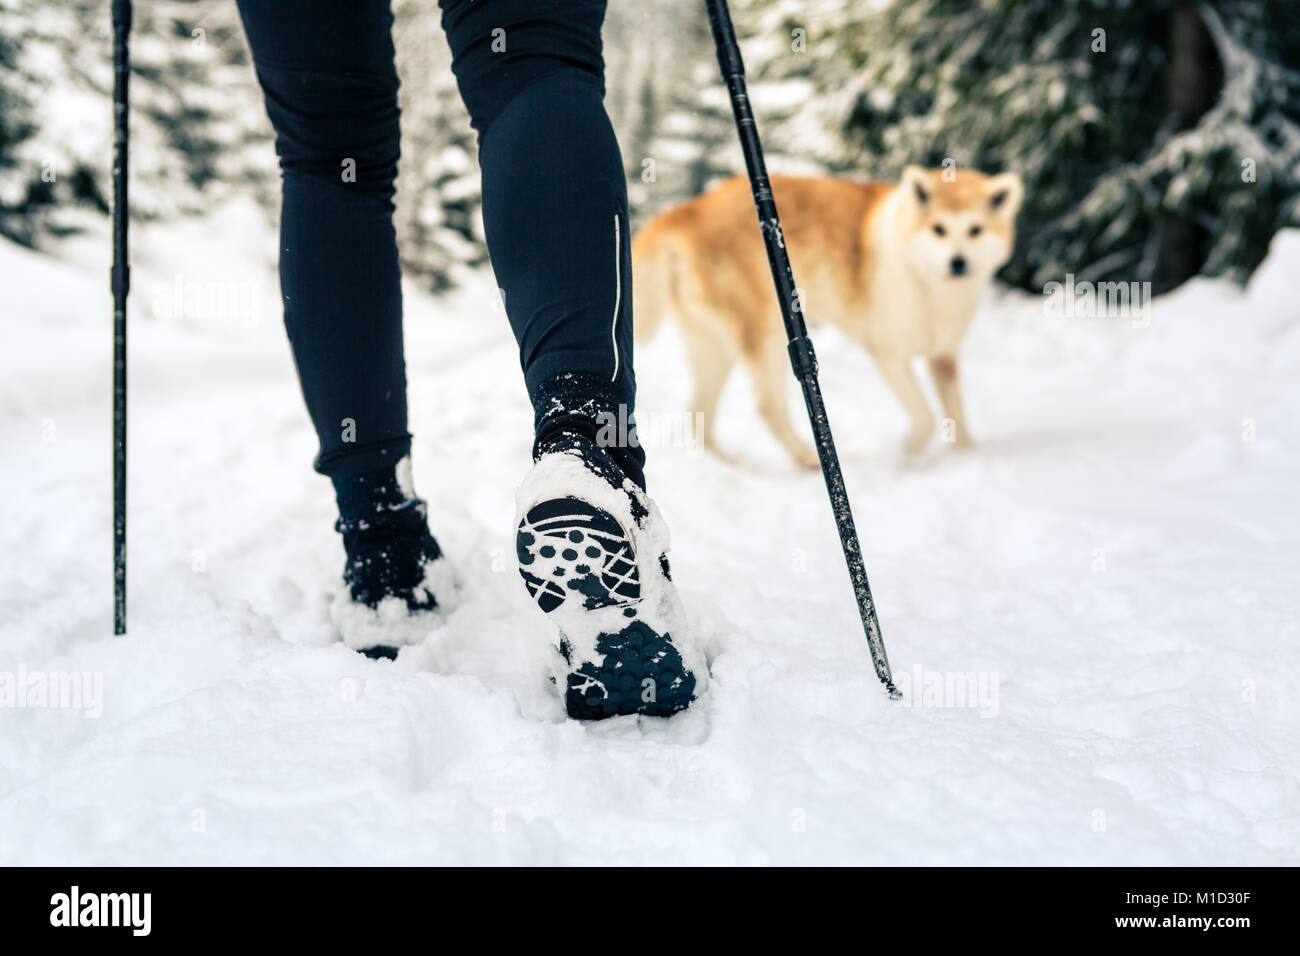 Weibliche backpacker Wandern in weiß winter Holz mit Akita Hund. Beine und Stiefel trekking. Erholung Fitness und gesunde Lebensweise draussen in der Natur. M Stockfoto